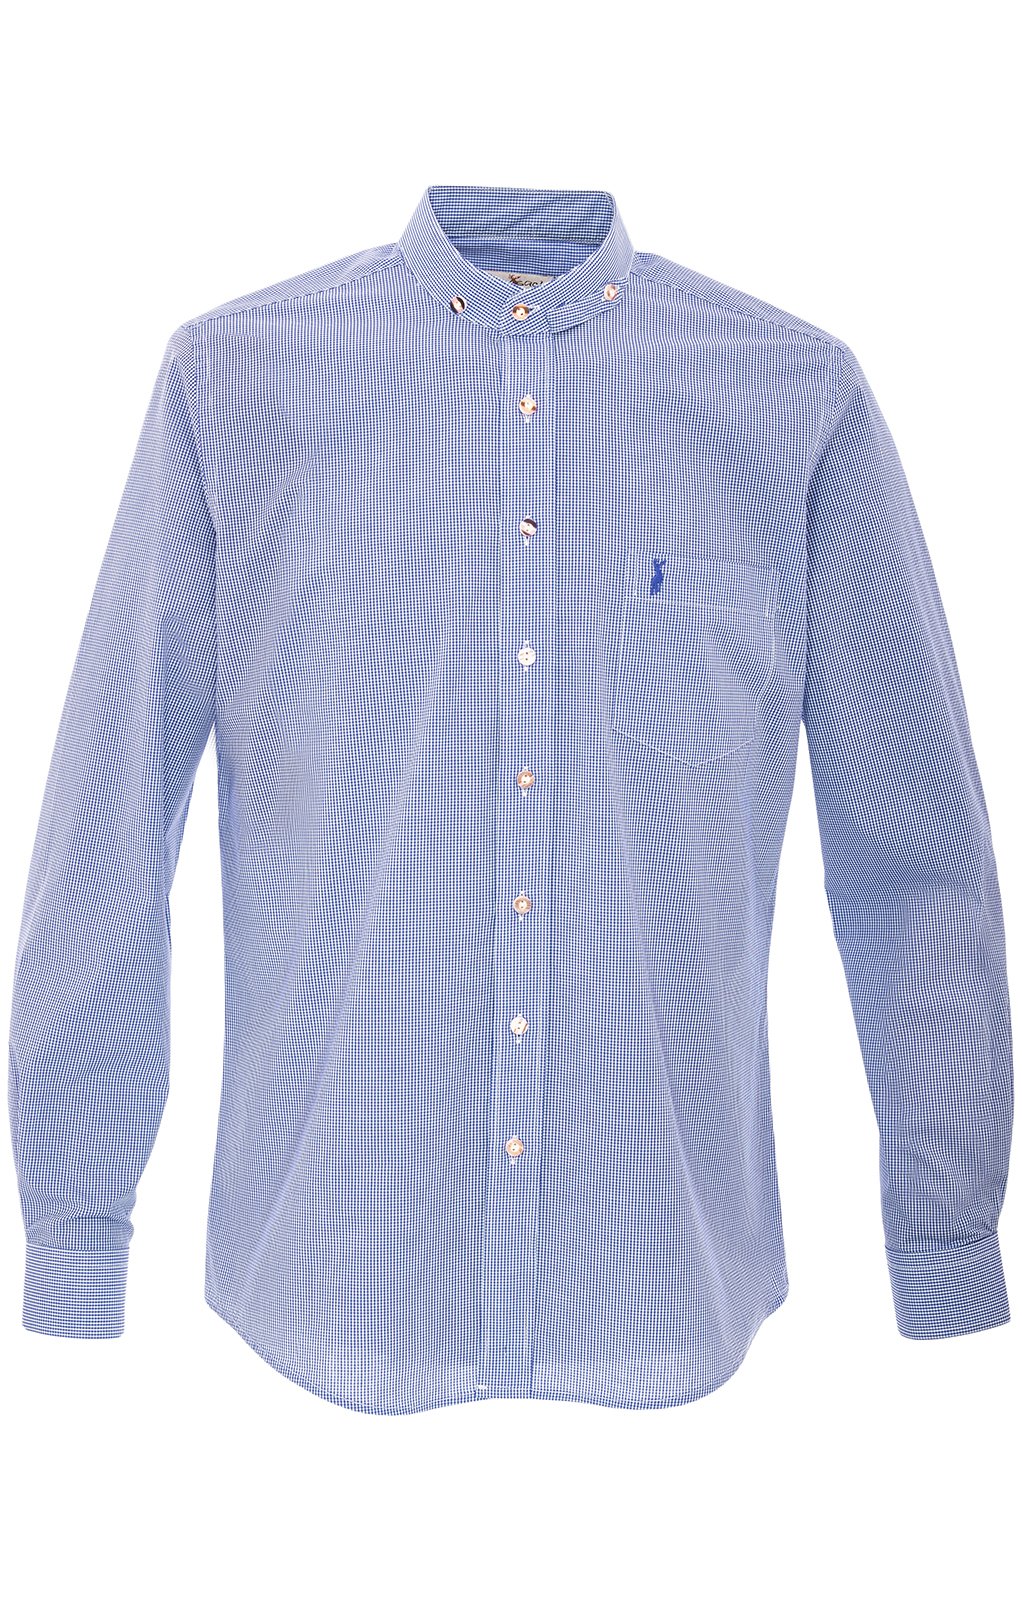 weitere Bilder von German traditional shirt 760CO blue (Slim Fit)